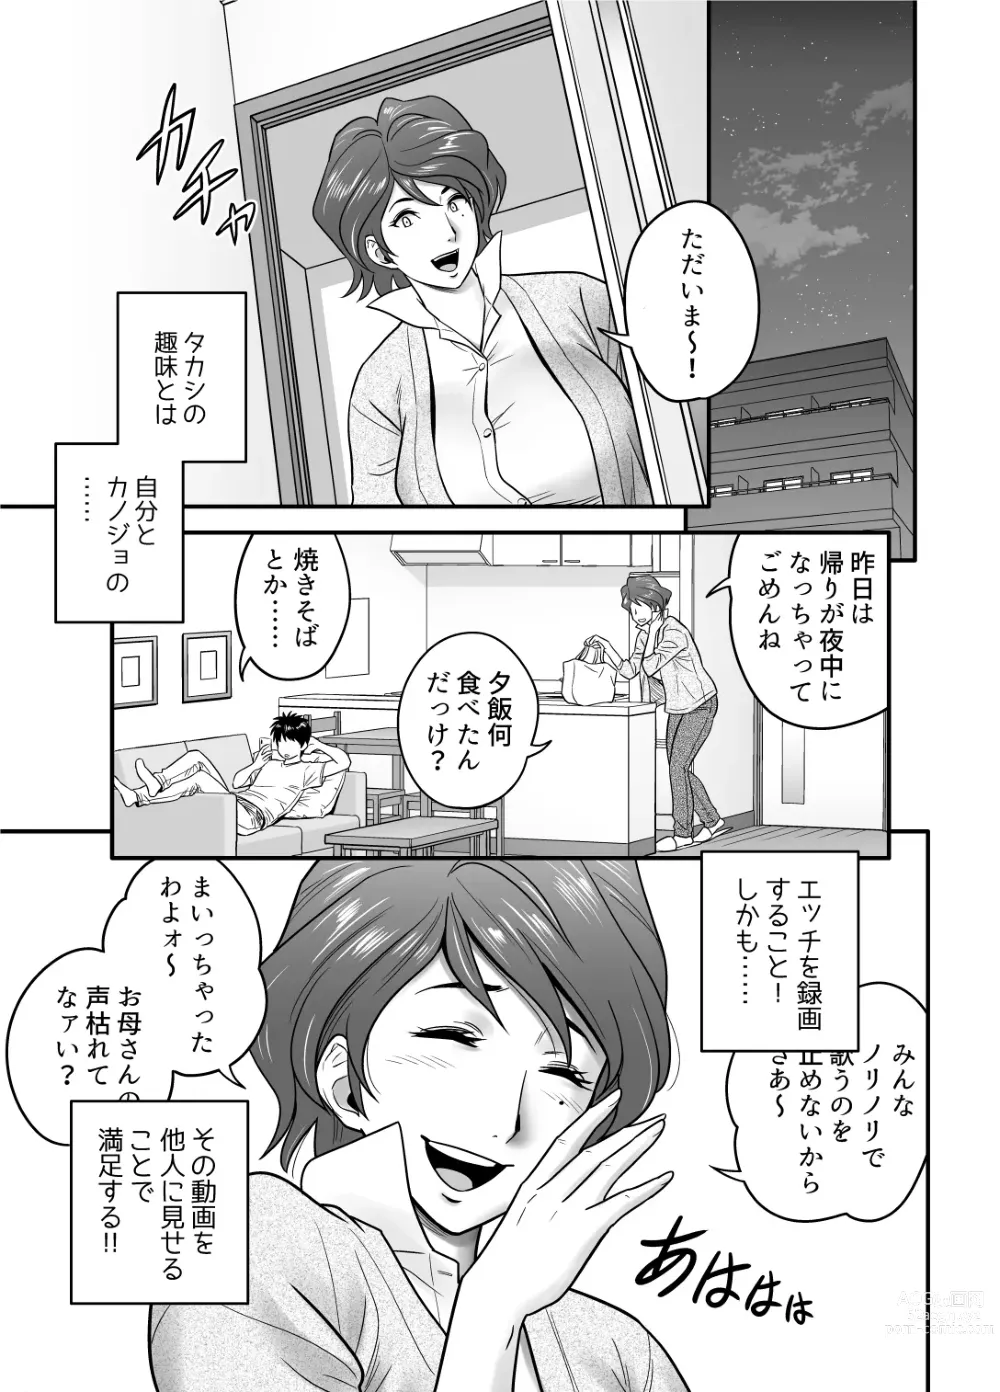 Page 23 of doujinshi Haha ga TomoKano ni Natta node